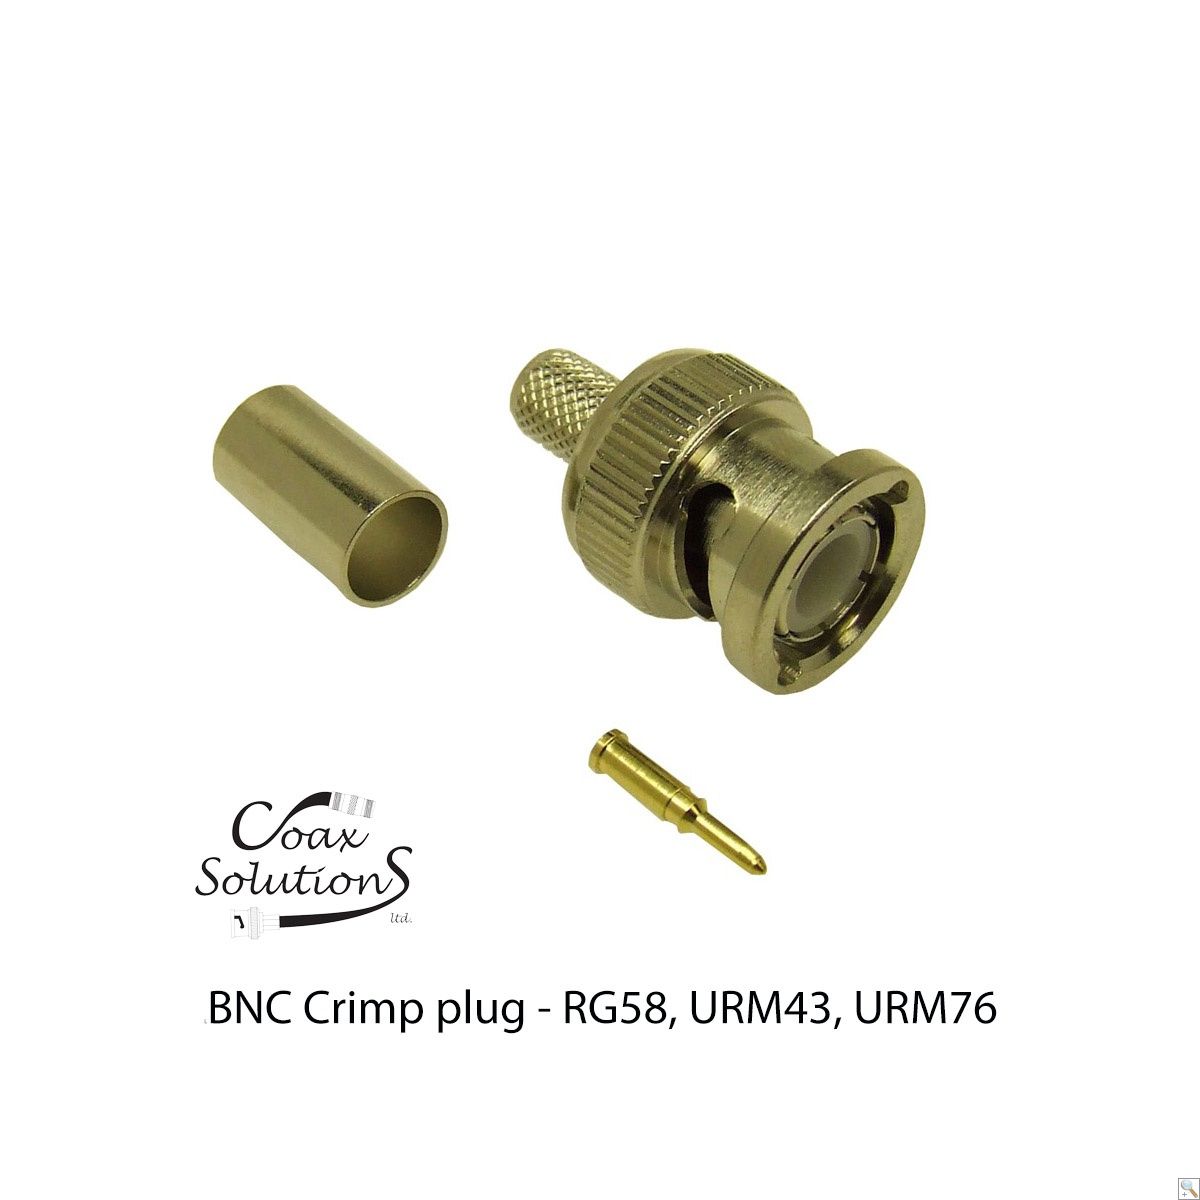 BNC Crimp plug RG58 (Die cast)